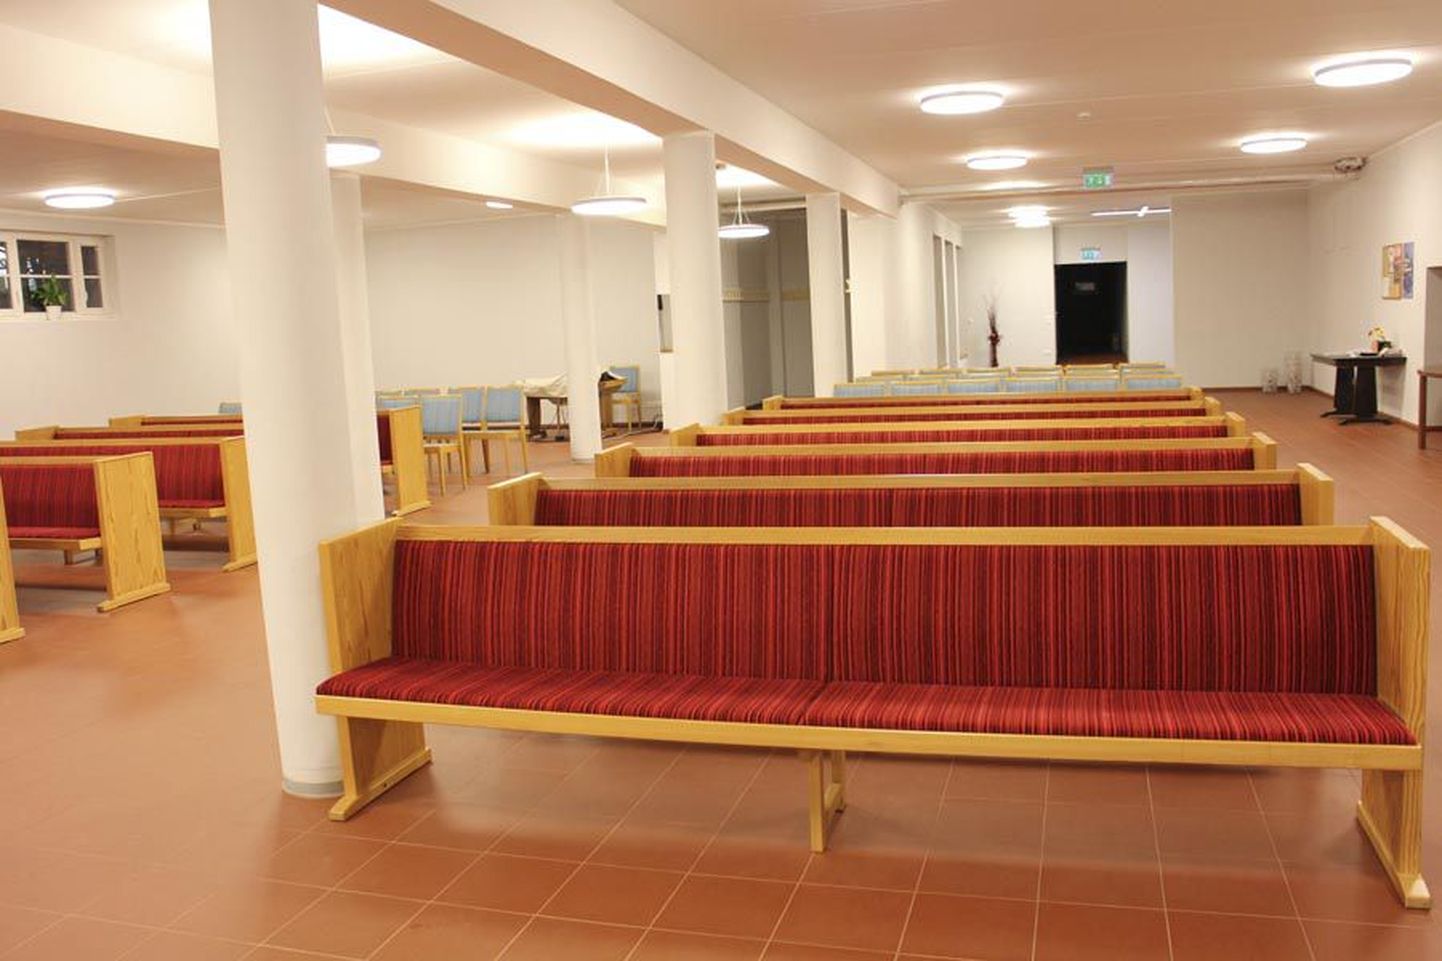 Viljandi baptistikoguduse hoone asub August Maramaa puiesteel. Jõuluõhtu jumalateenistus peetakse suure hoone keldrikorrusel.